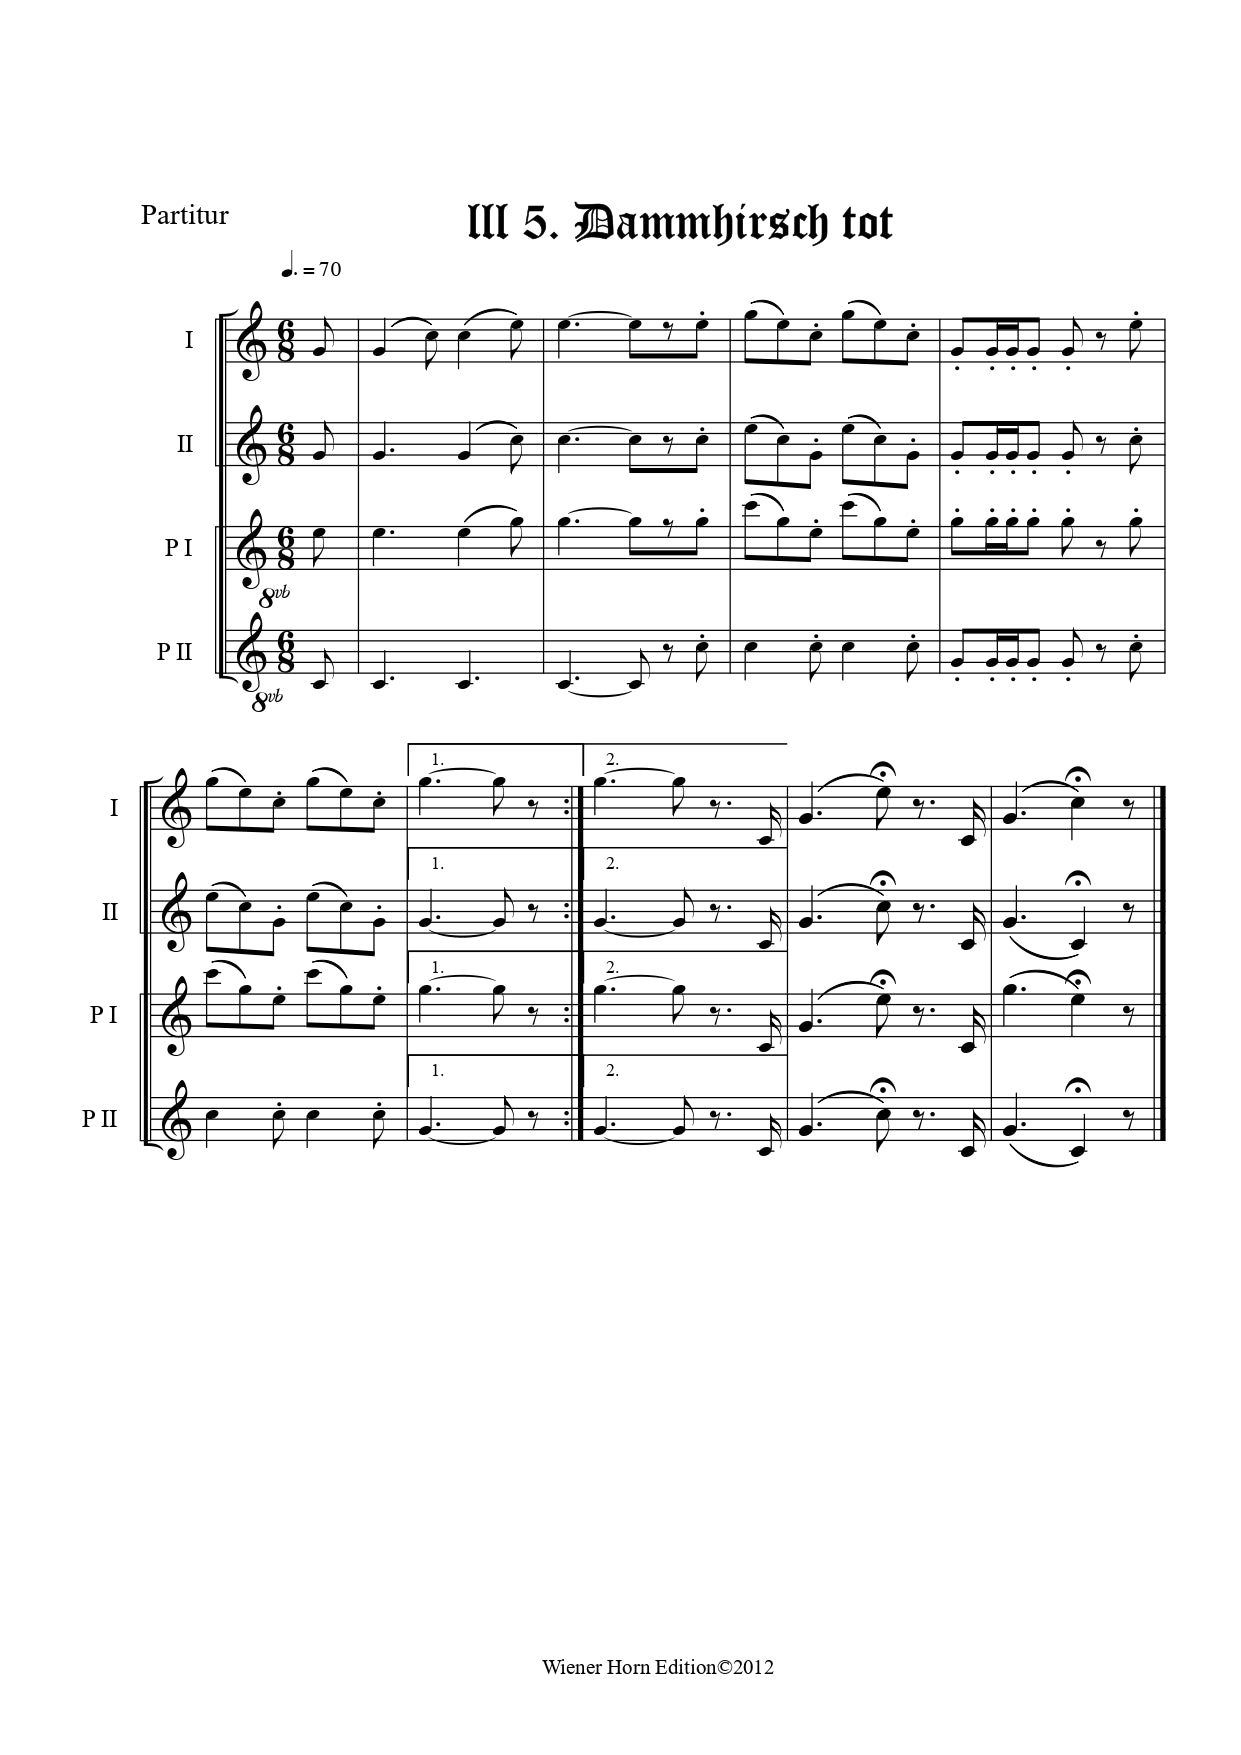 Dammhirsch tot - Totsignal für 2 Pless Hörner & 2 Parforce Hörner in B mit Text